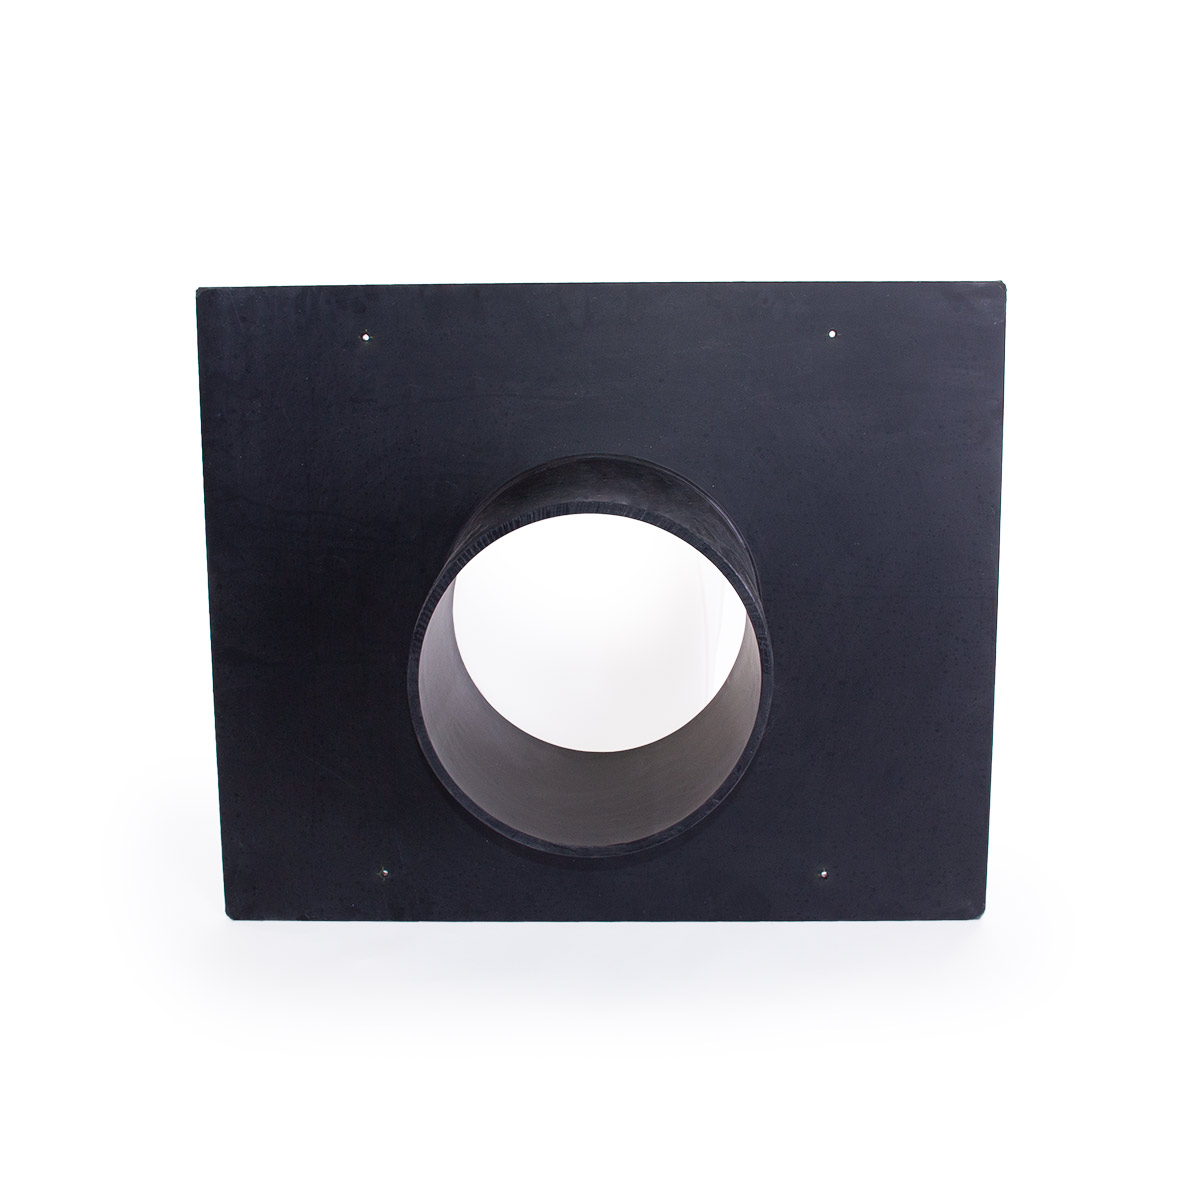 Adapterplatte zu Rigole EcoBloc 420, aus PE, schwarz